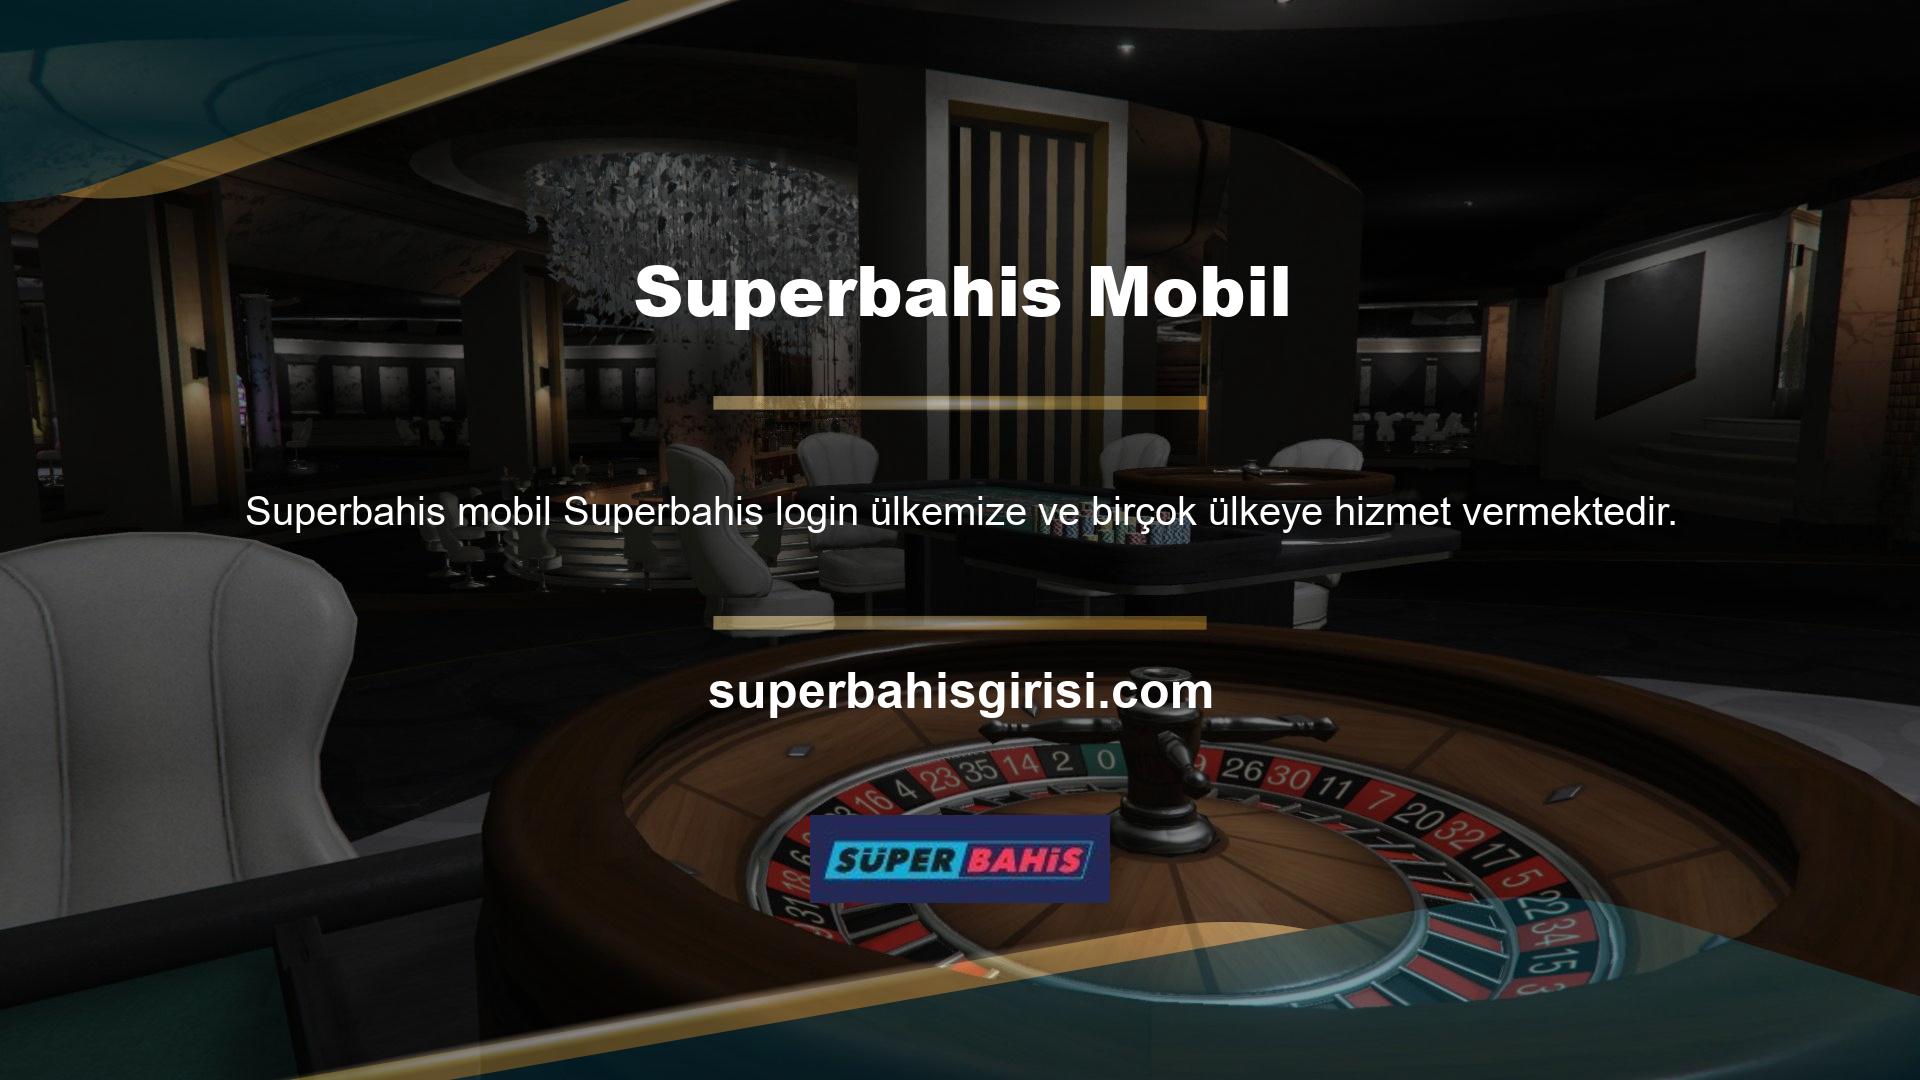 Bahis, canlı bahis, casino ve canlı casino işletmeciliği yapan Superbahis, yeni başlayanlar için popüler bir sitedir